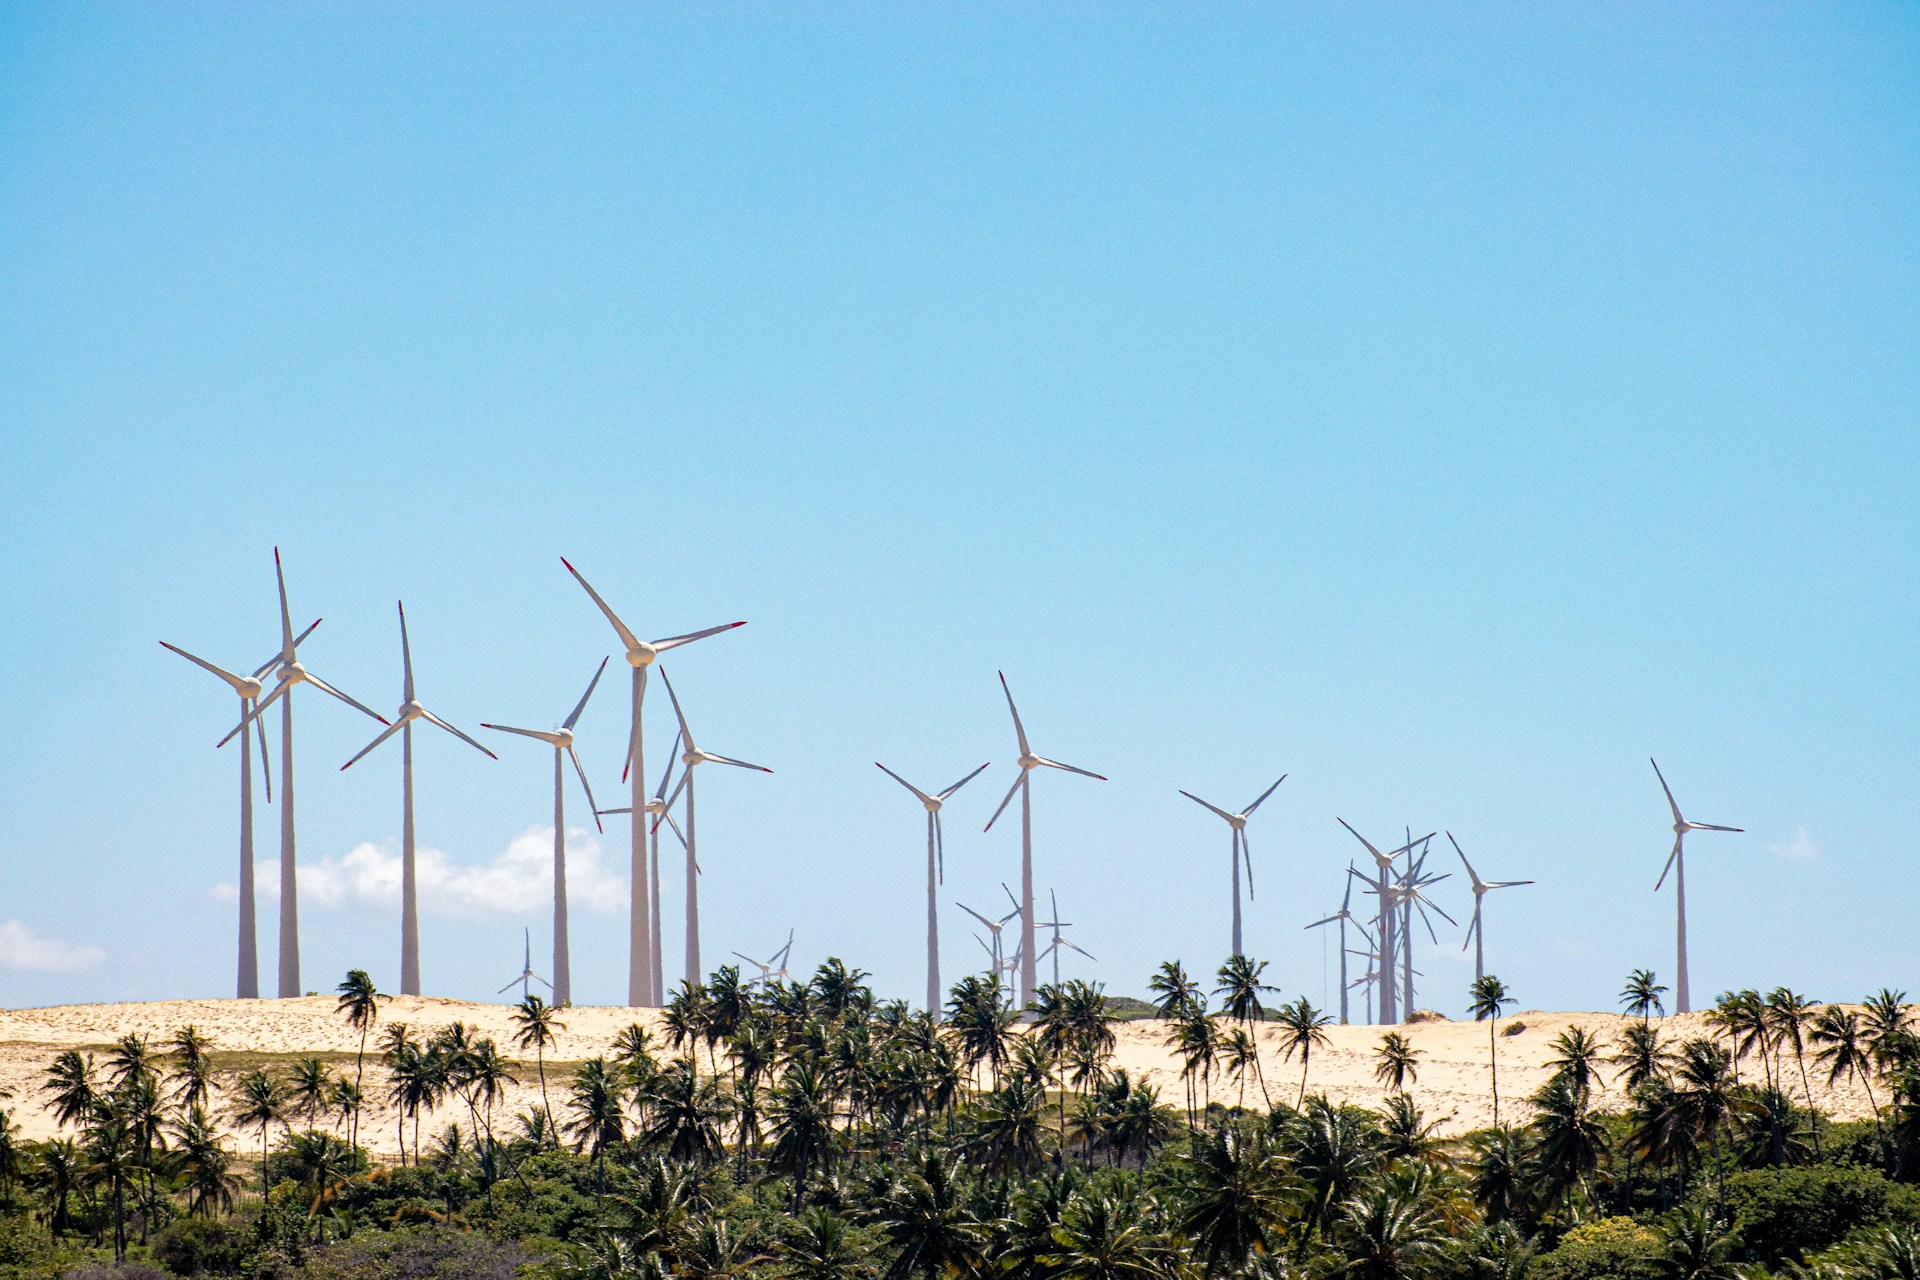 ‘Groene landroof’ in Brazilië voor windmolens en zonnepanelen